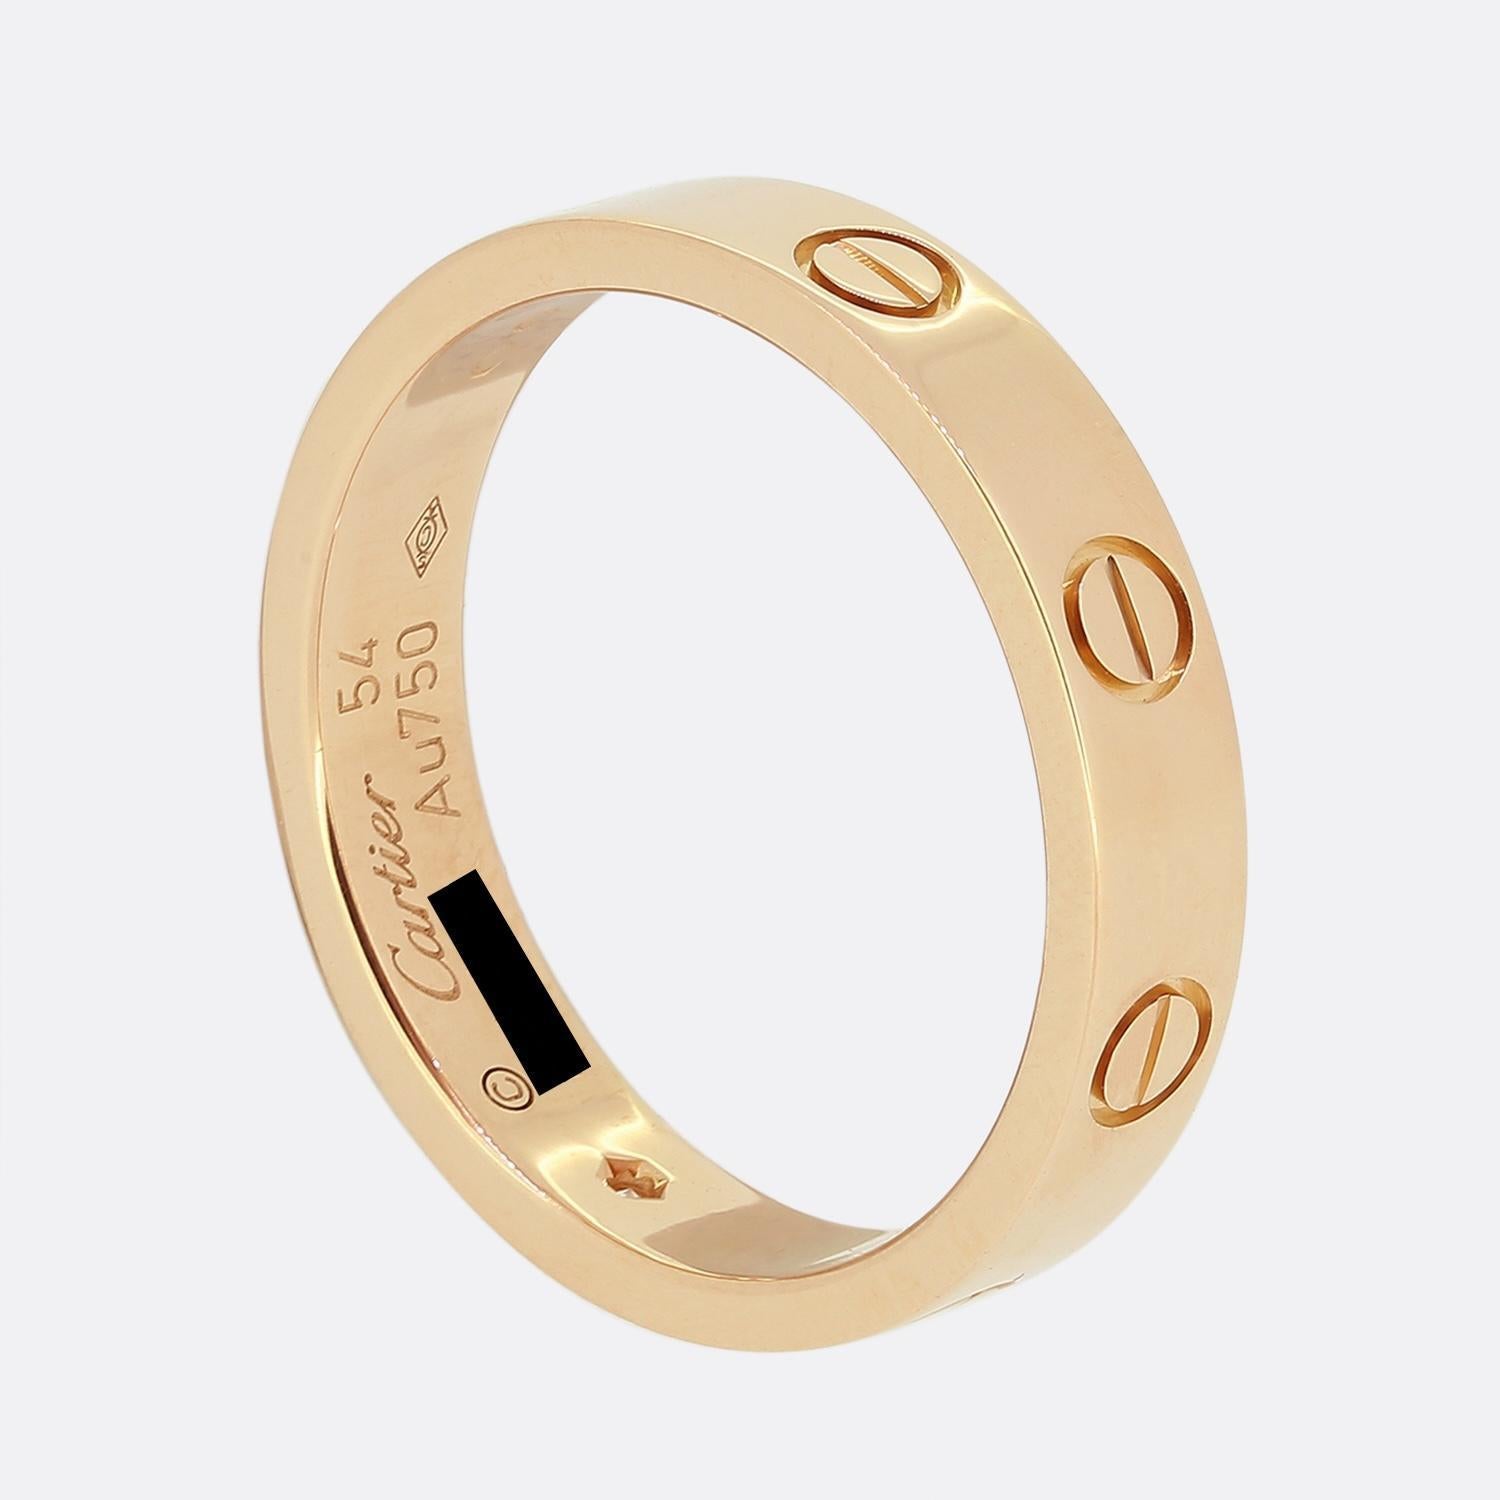 Hier haben wir einen Ehering aus 18 Karat Roségold aus dem Luxusschmuckhaus Cartier. Dieser Ring ist Teil der weltberühmten LOVE Collection und zeigt einen einzelnen runden Diamanten im Brillantschliff neben dem ikonischen Schraubenmotiv. Dieses